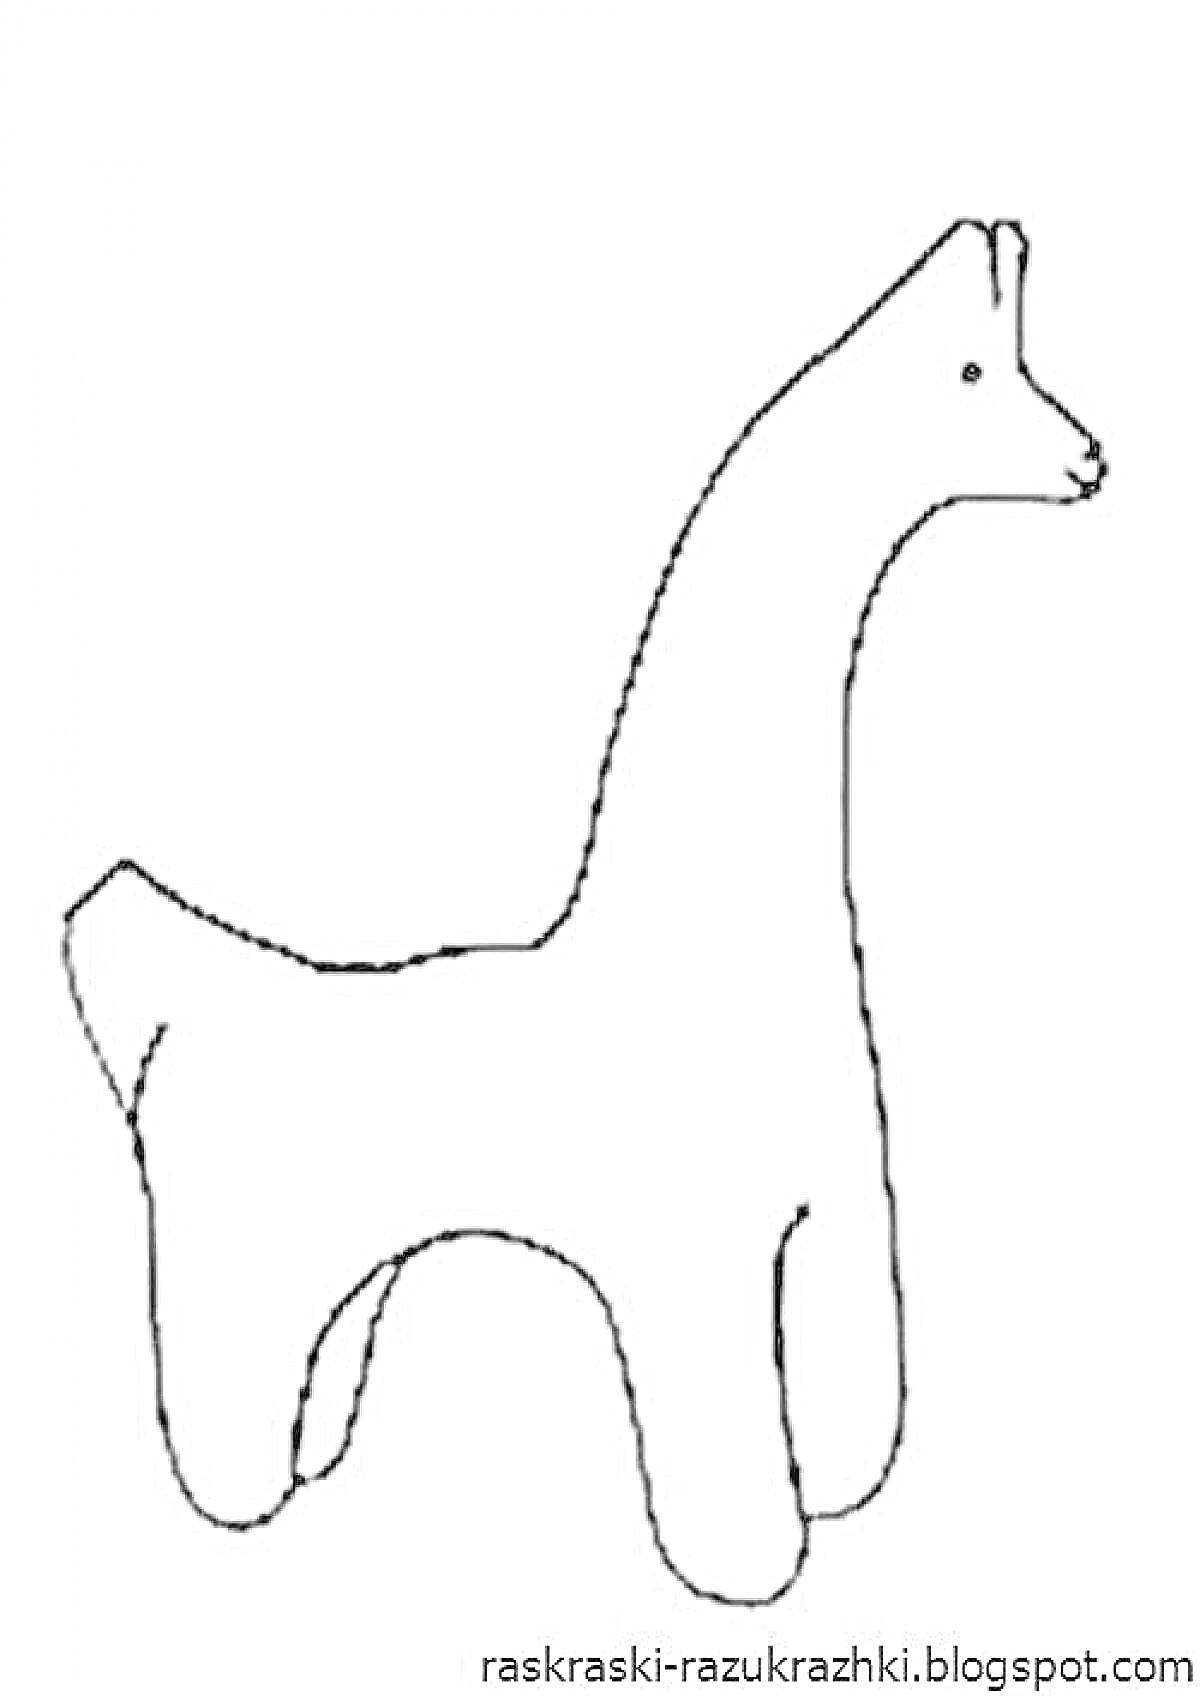 Раскраска Филимоновская игрушка «Лошадка» - фигура лошадки с примитивными линиями головы, спины, ног и хвоста из глины.